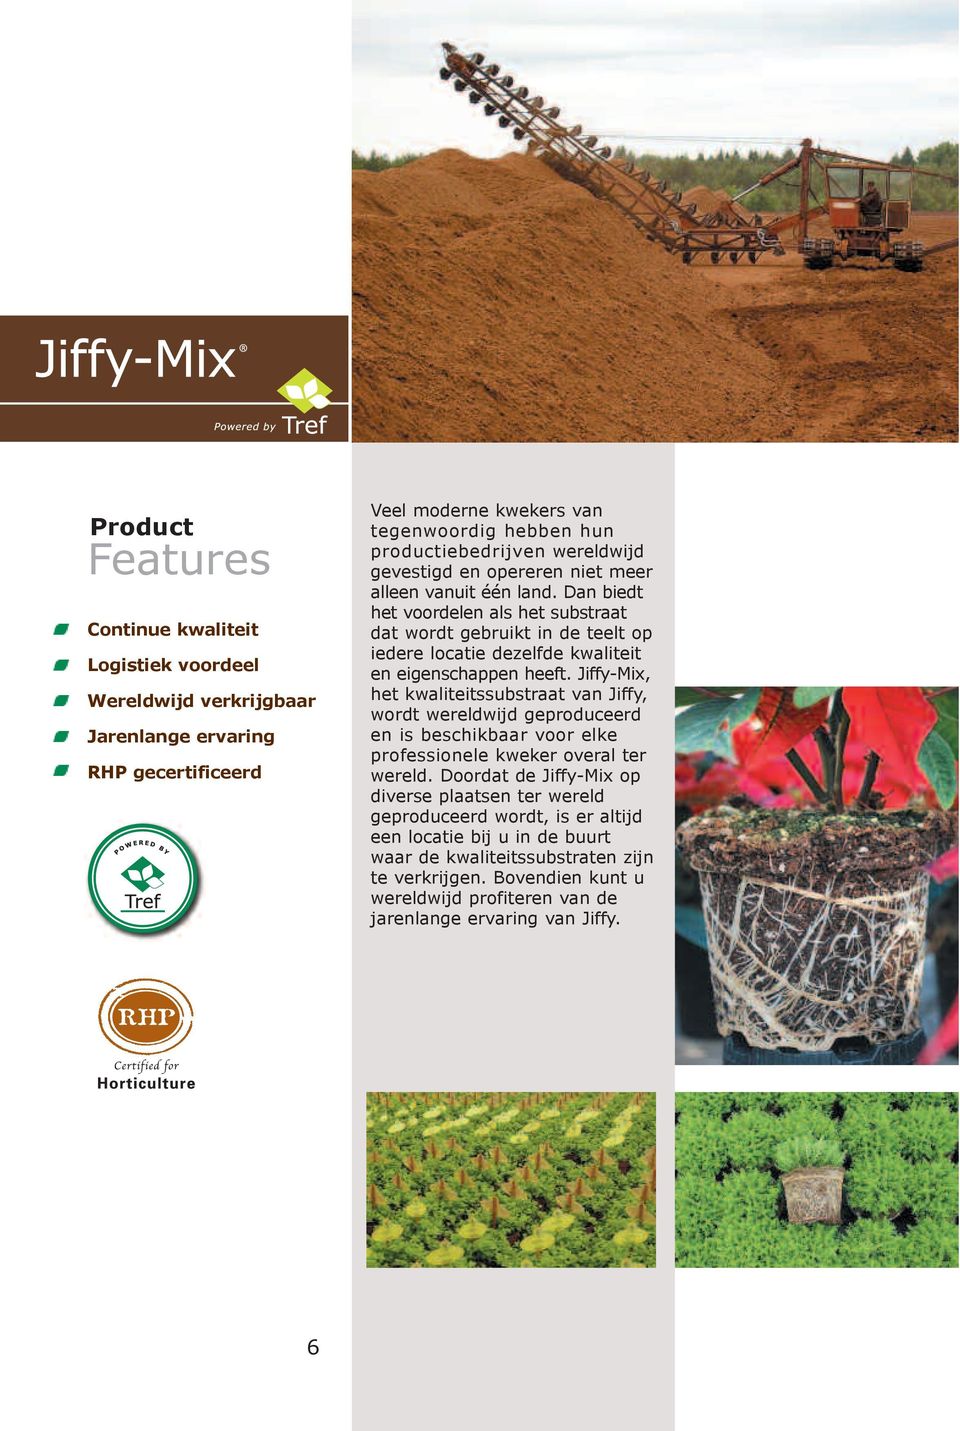 Jiffy-Mix, het kwaliteitssubstraat van Jiffy, wordt wereldwijd geproduceerd en is beschikbaar voor elke professionele kweker overal ter wereld.